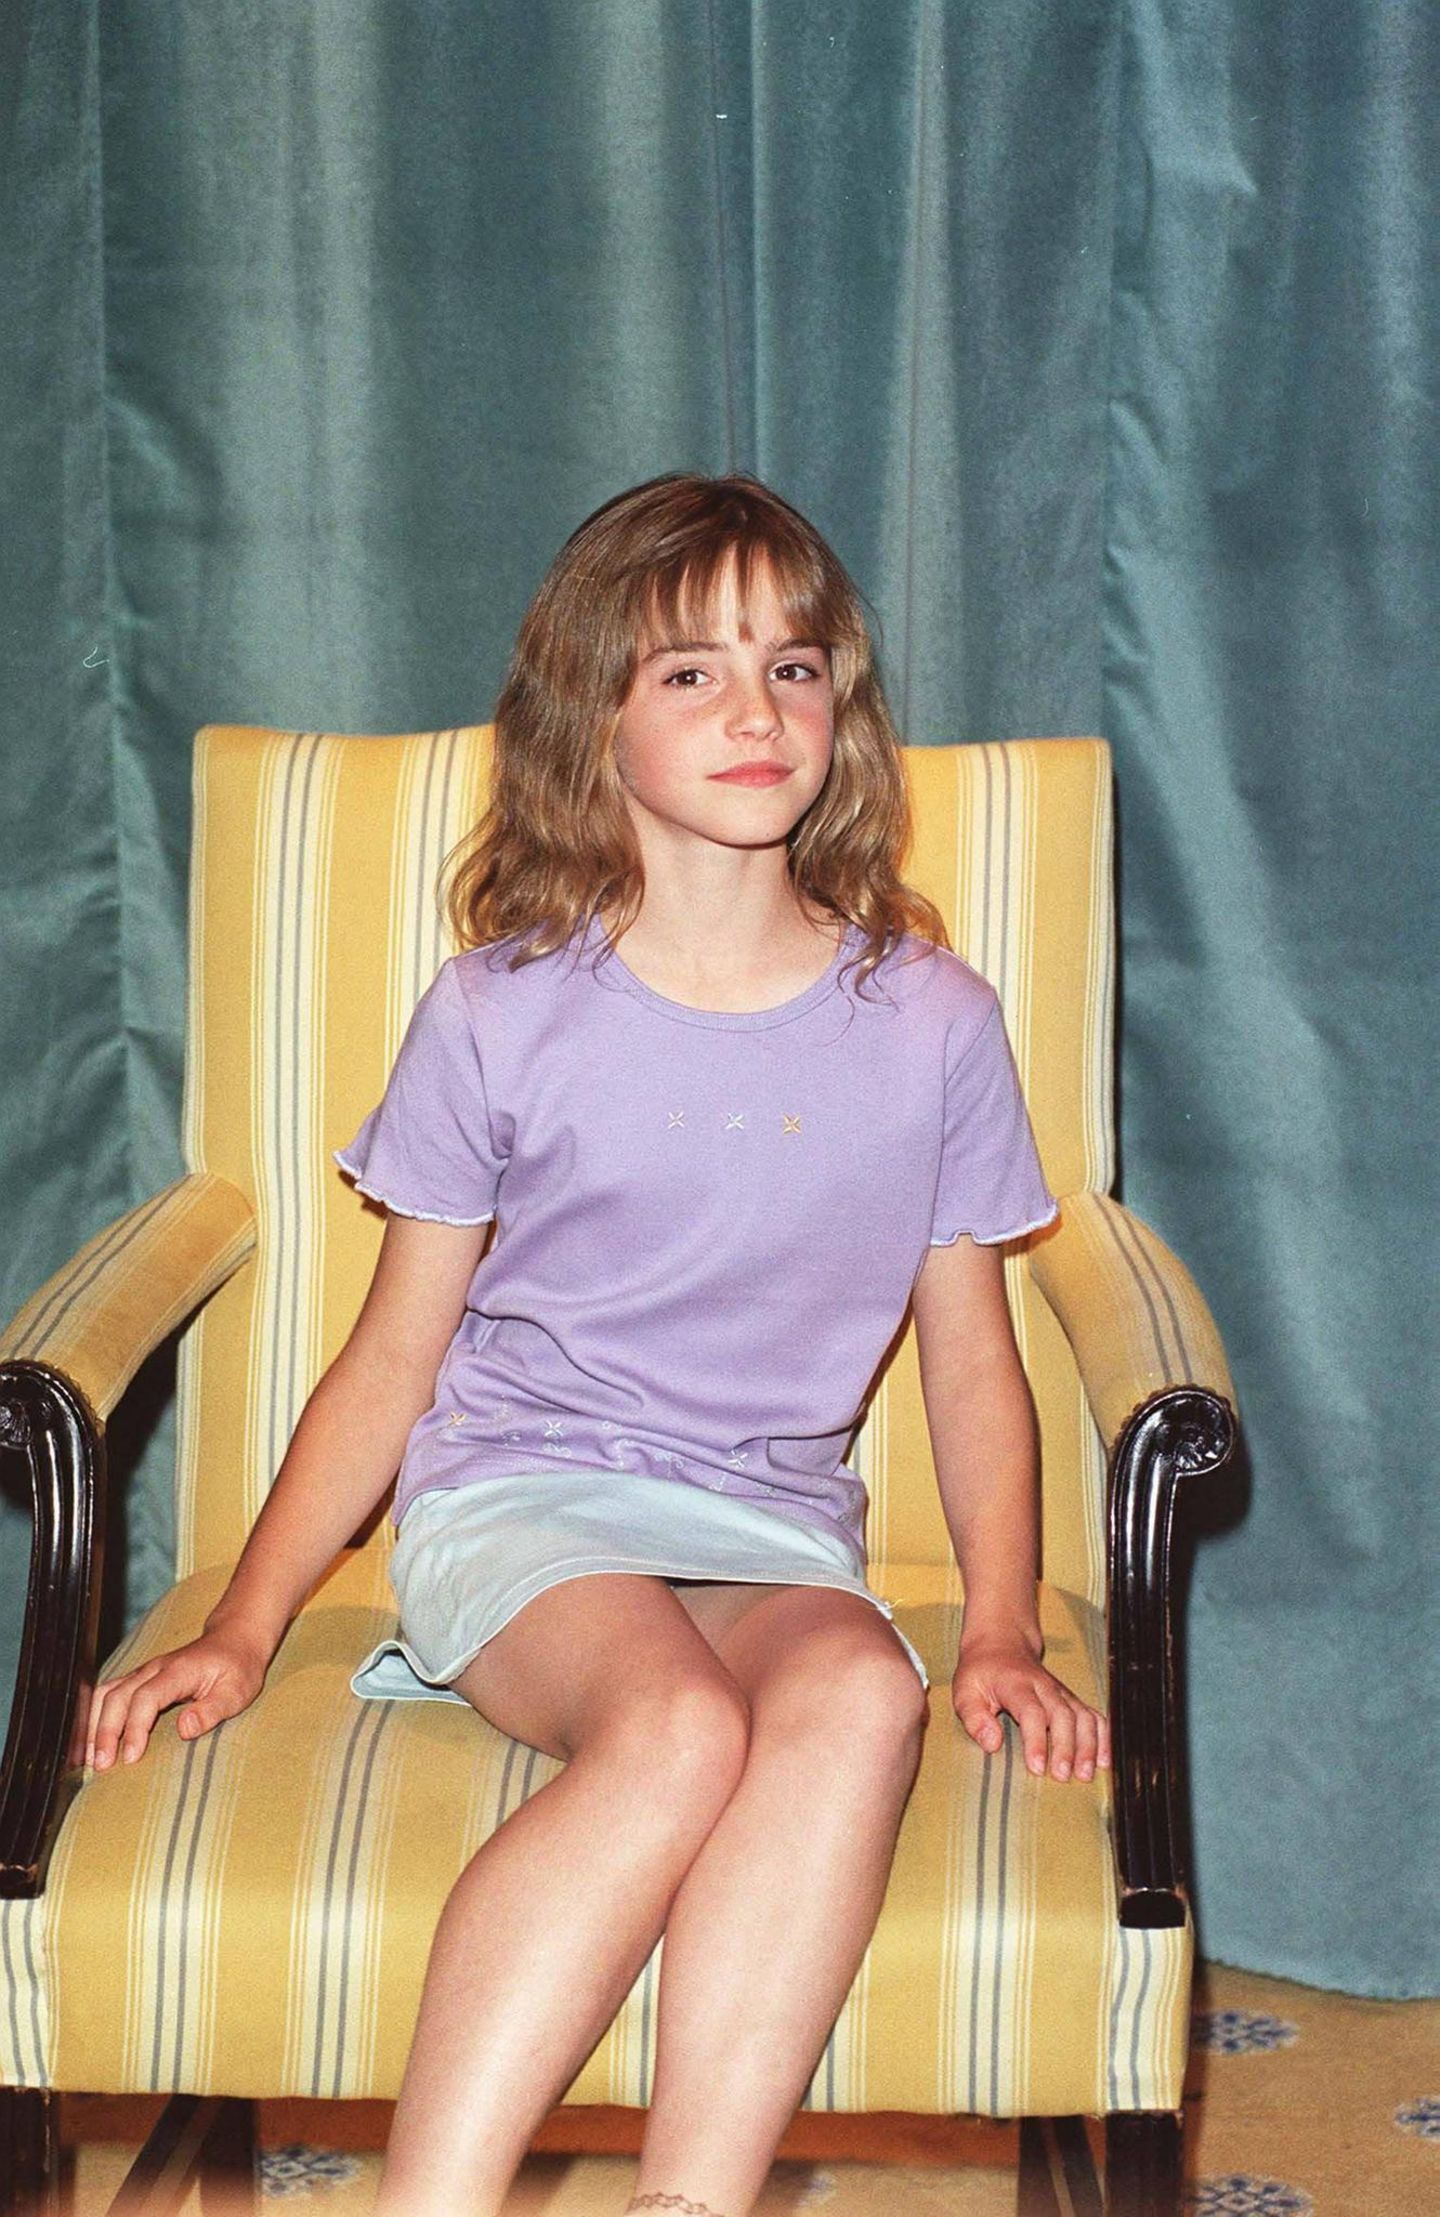 Im Jahr 2000 konnte sich Emma Watson gegen Tausende von Bewerberinnen beim Casting für die kommenden "Harry Potter"-Filme durchsetzen. Beim Fotoshooting schlüpft sie bereits in die Rolle der selbstbewussten Hermine Granger und posiert im lilafarbenen T-Shirt mit kurzen Jeansrock für die Fotograf:innen. 